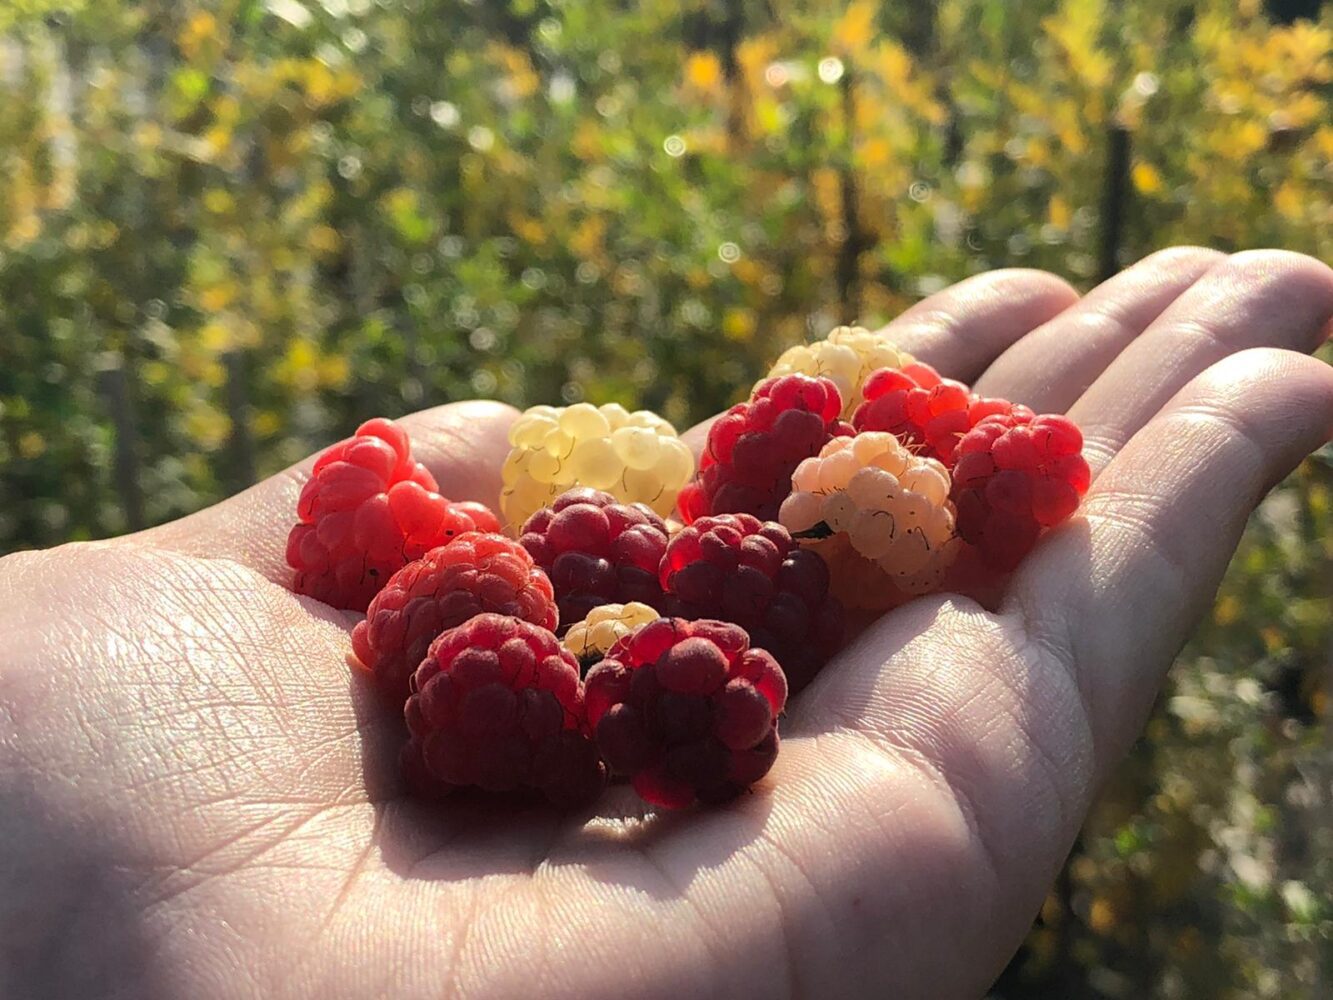 Frutti piccoli: un vivace bagno di salute con poche calorie!